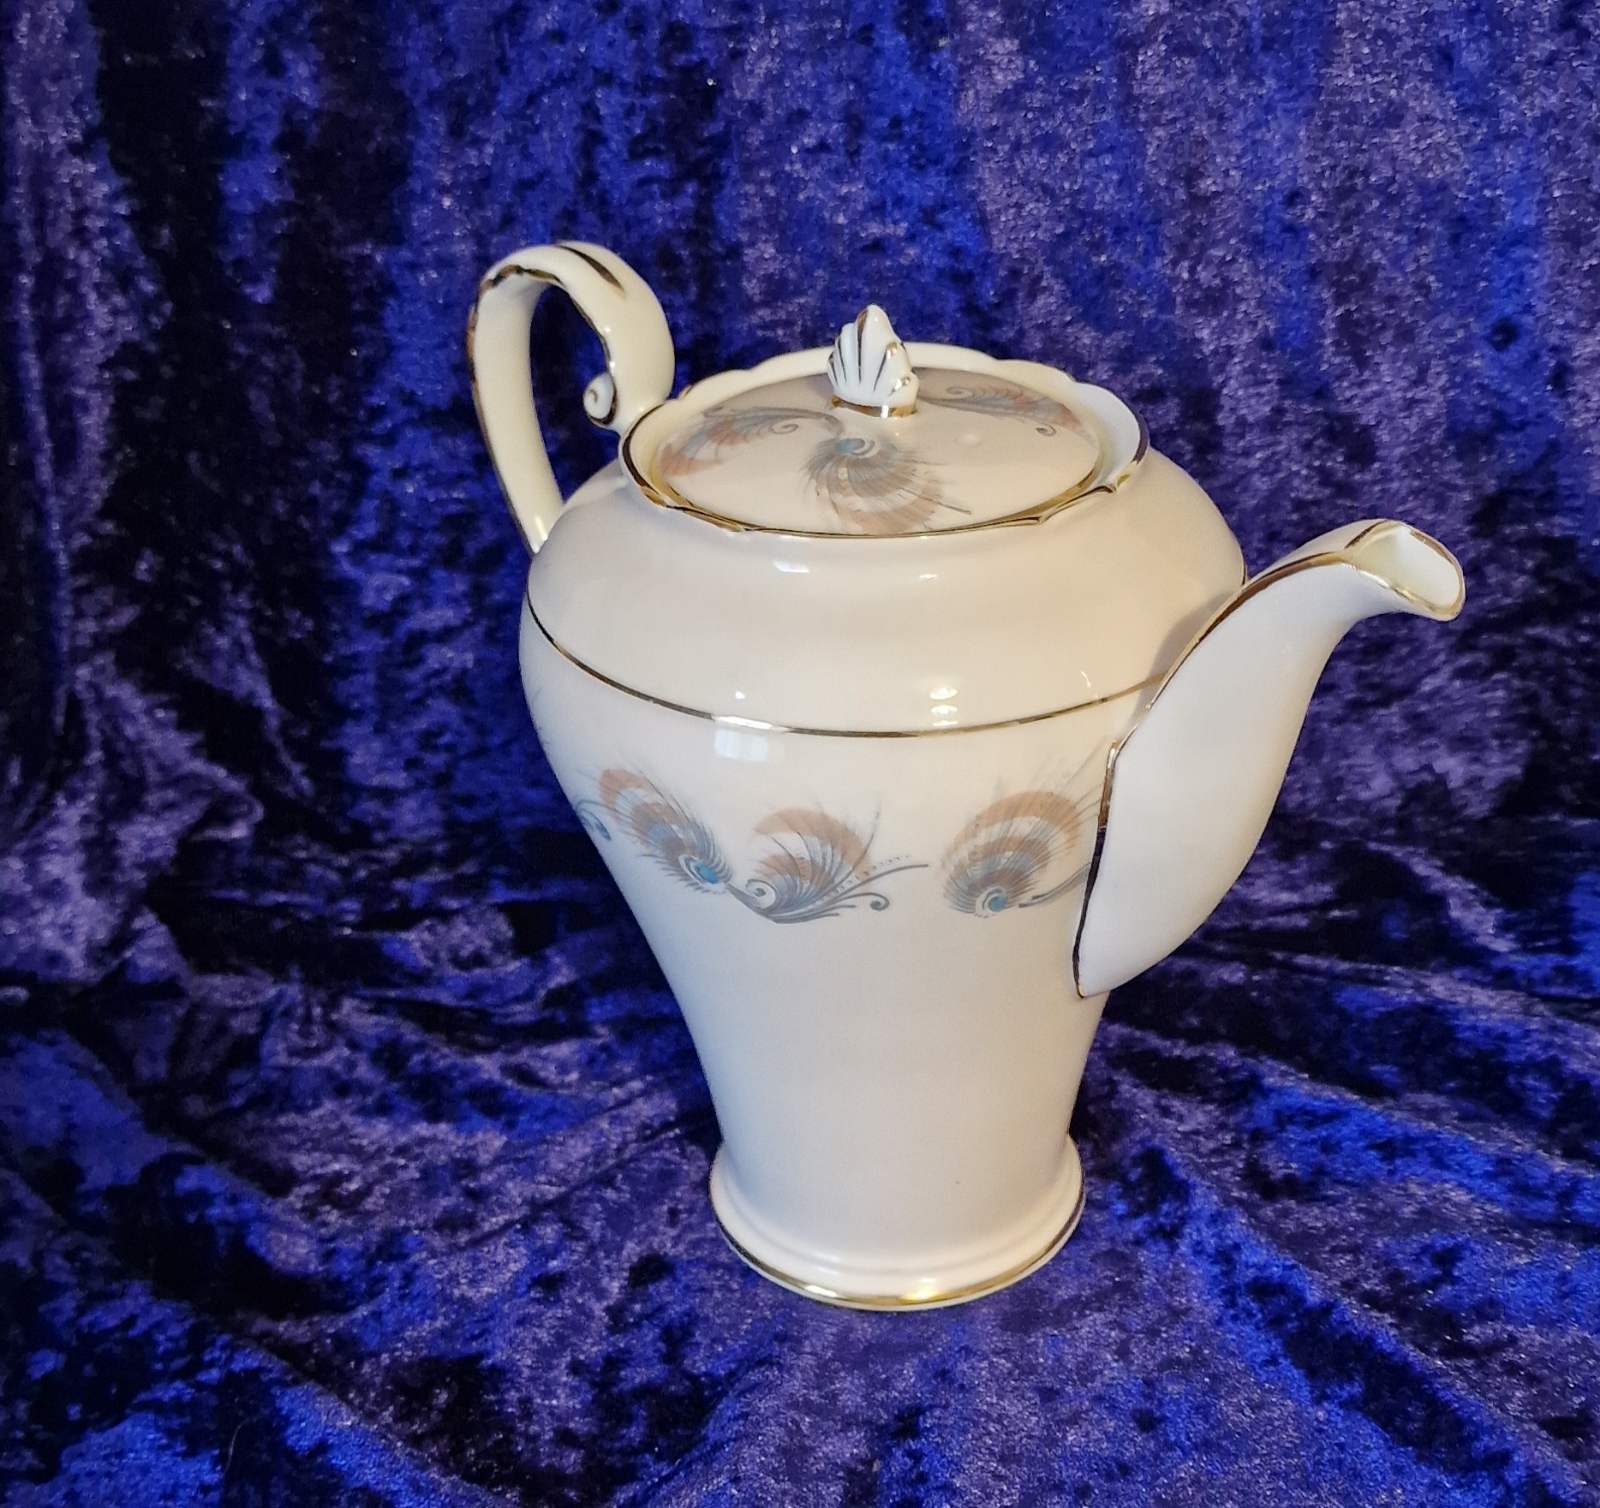 Elegant white teapot with gold trim, Vintage Aynsley Tibet Pattern English bone china.